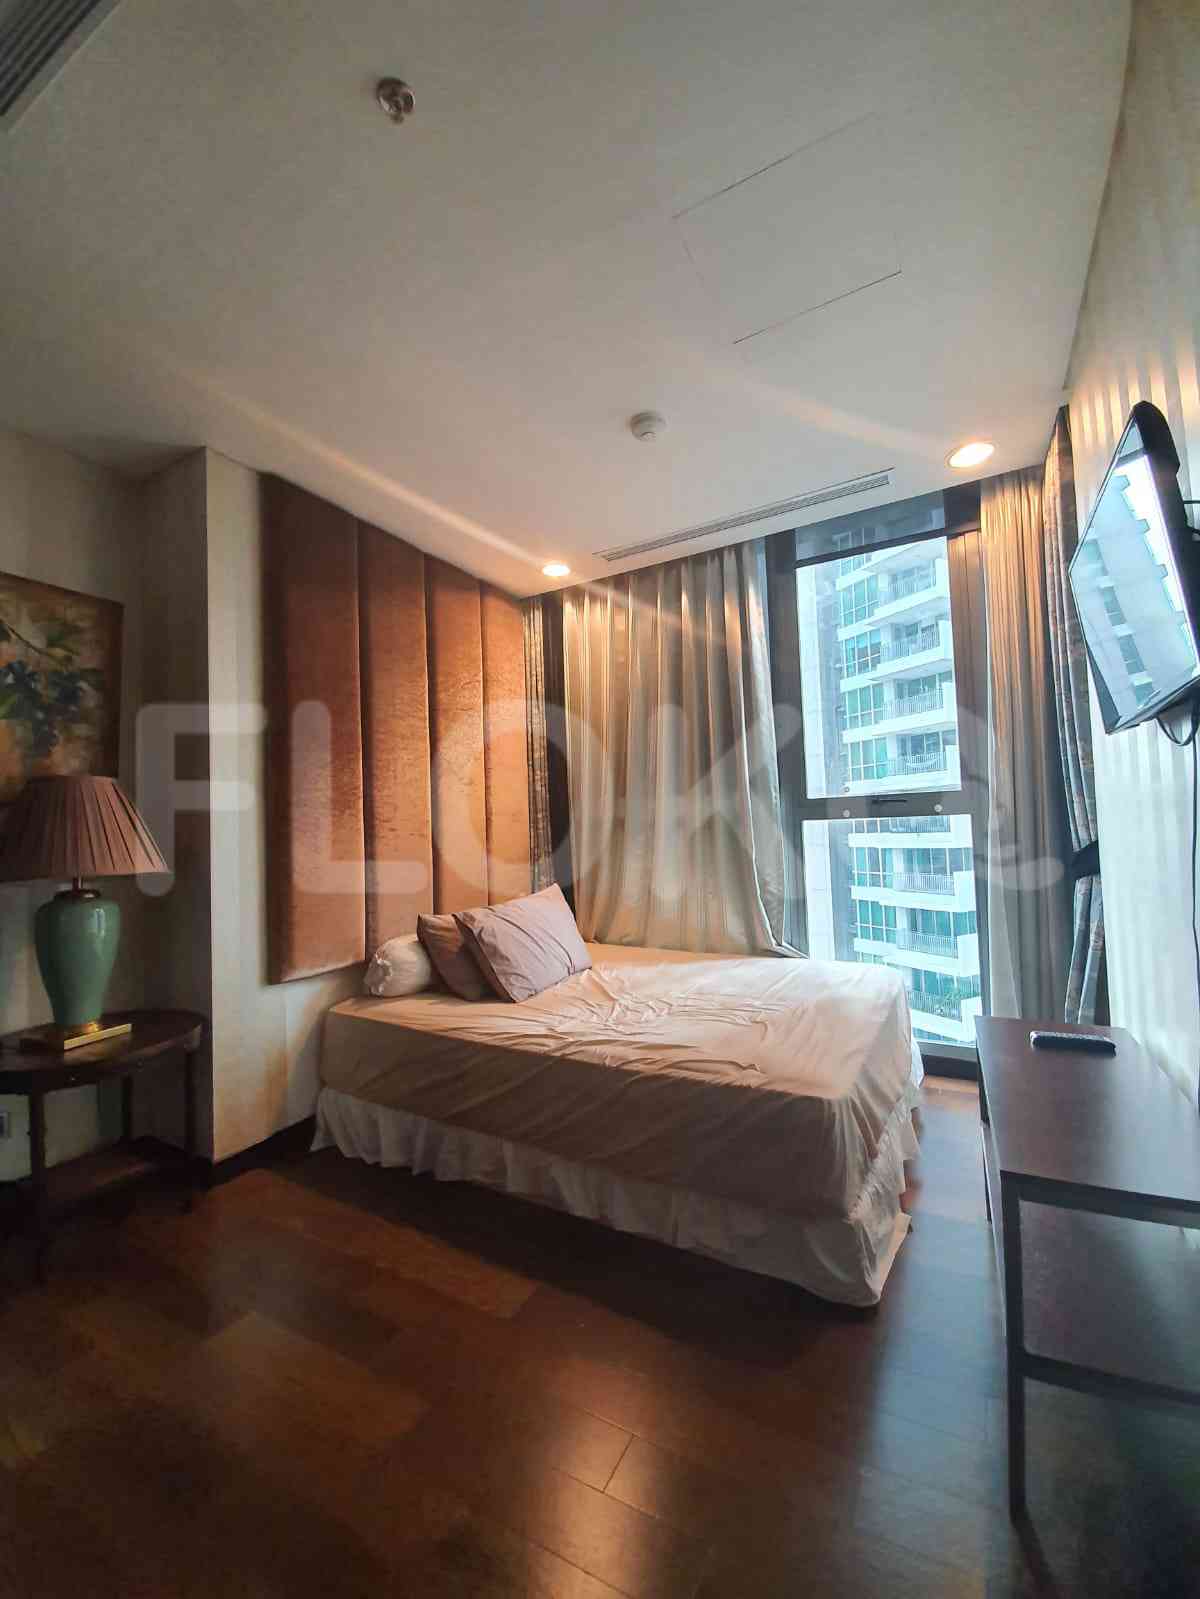 3 Bedroom on 15th Floor for Rent in Kemang Village Residence - fke5fe 5